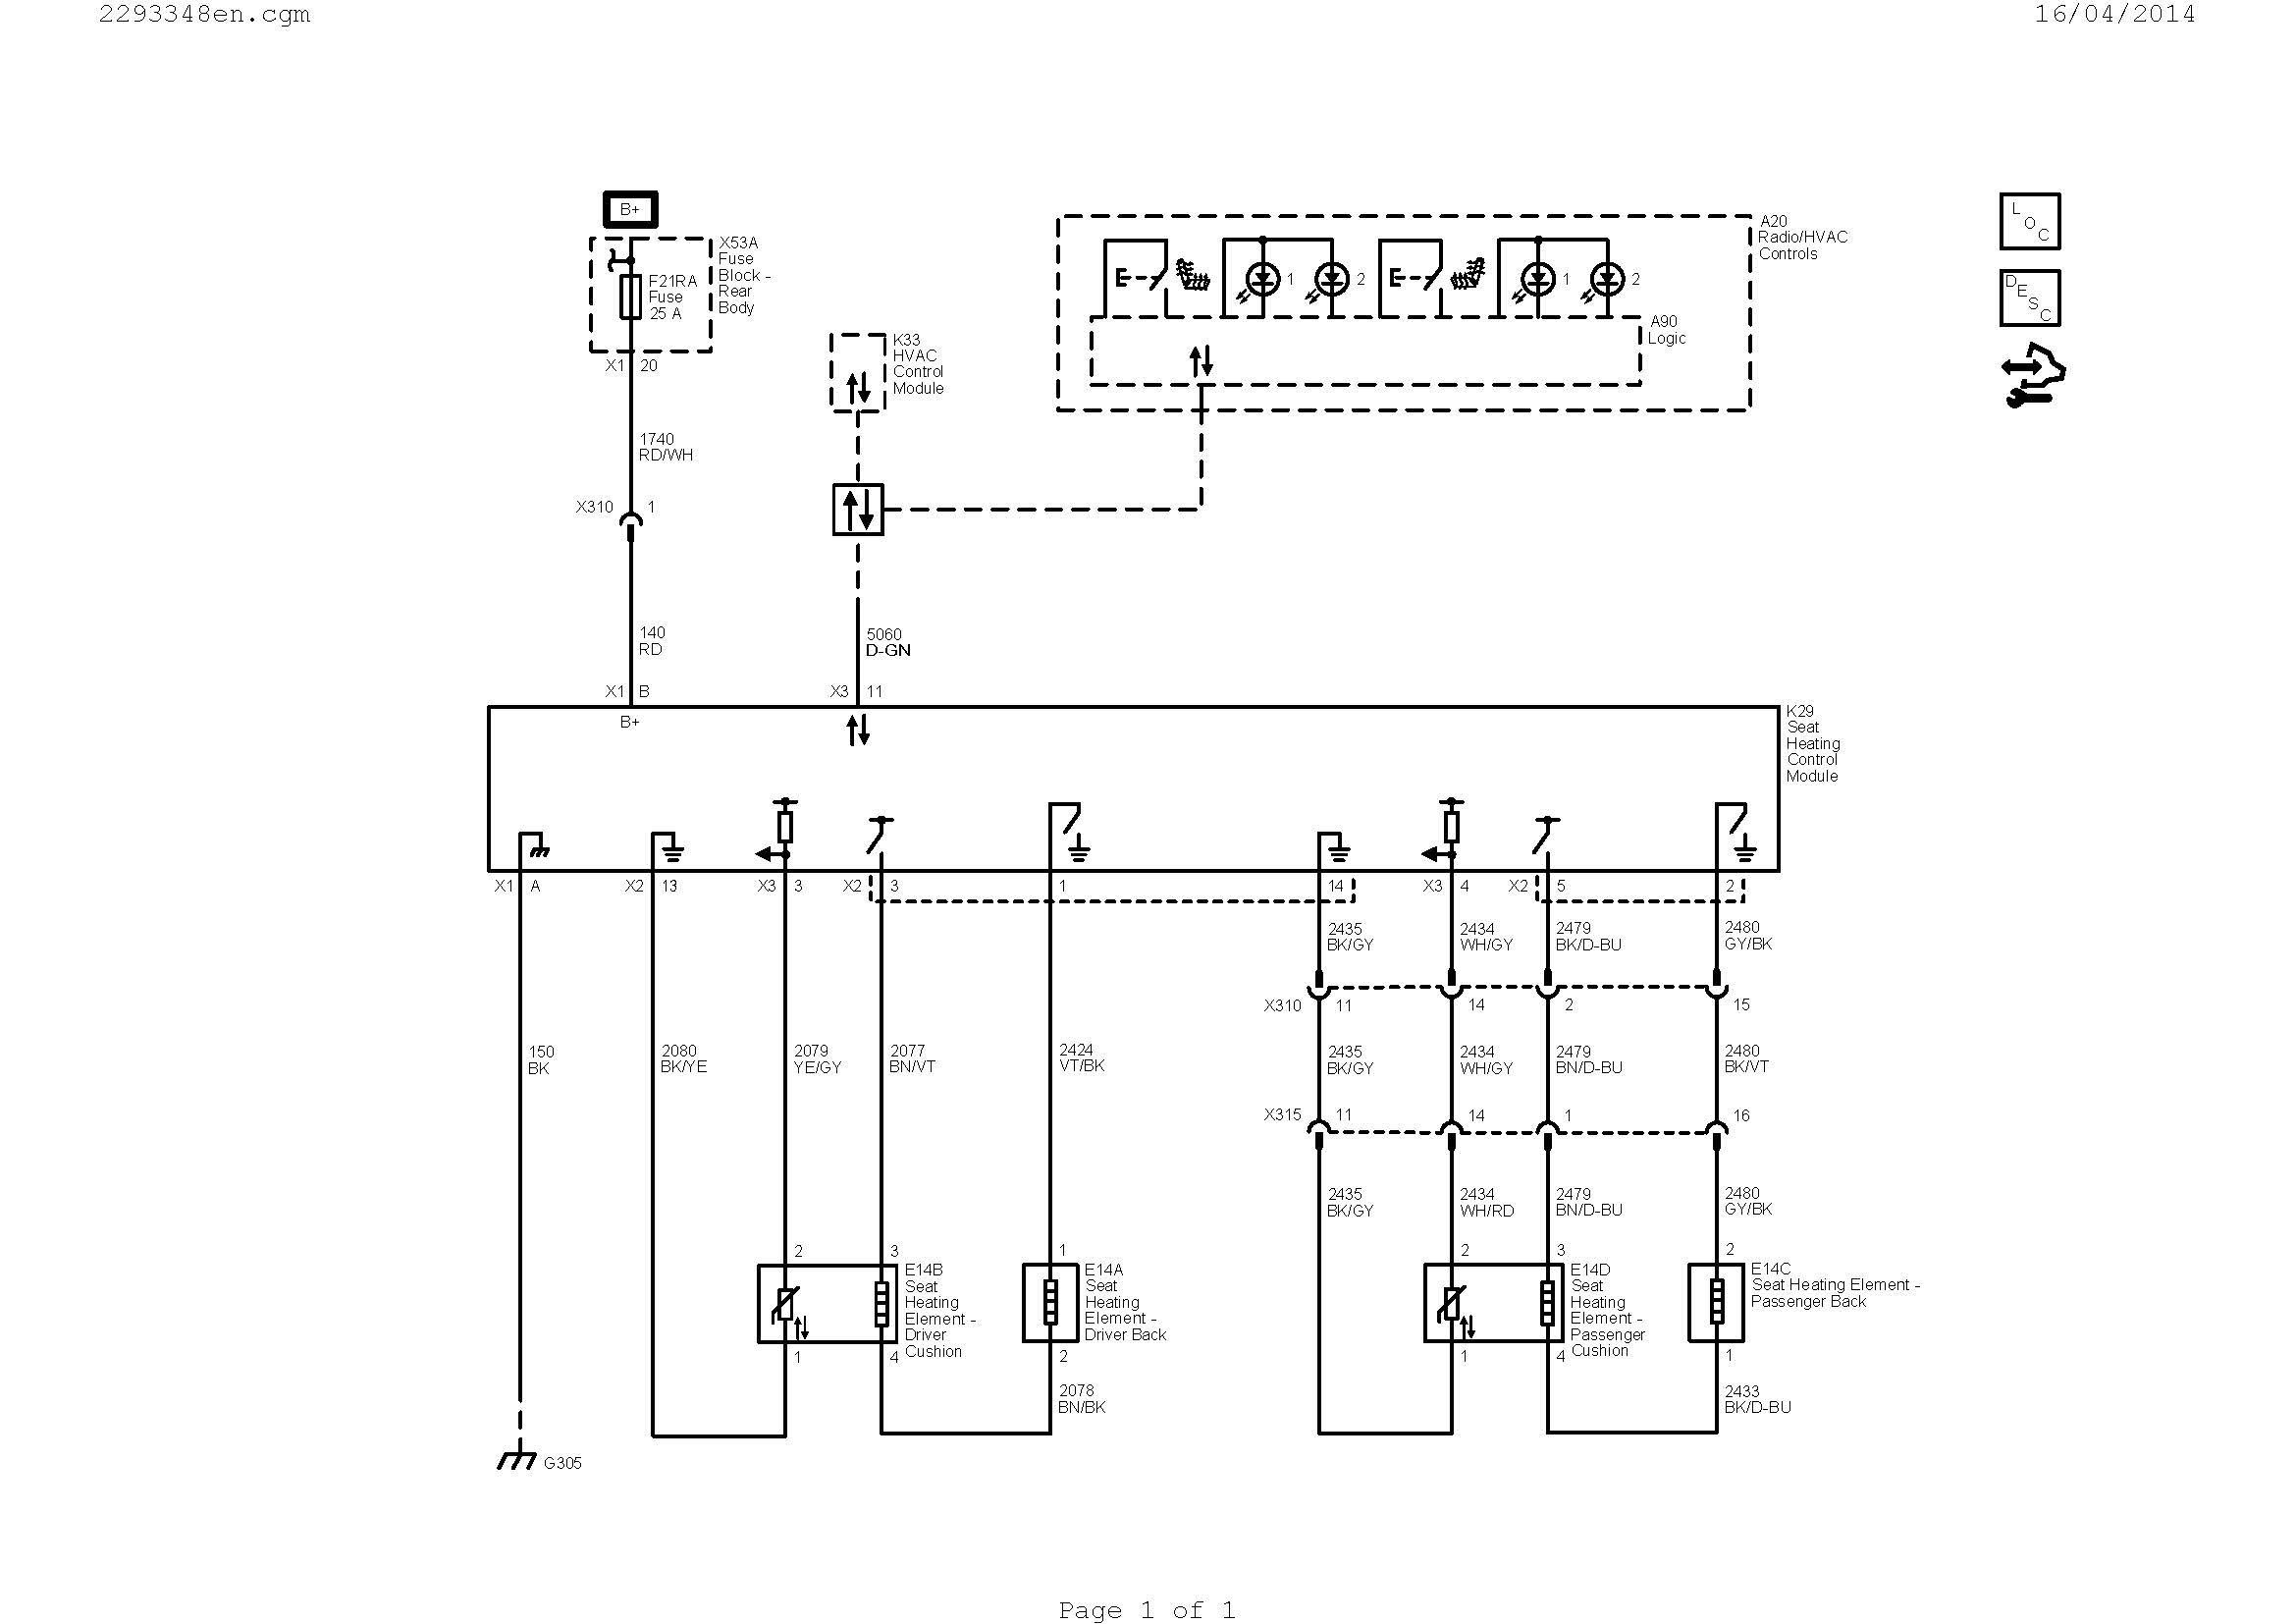 Systems Engineering V Diagram Air Conditioner Wiring Diagram Picture Download Of Systems Engineering V Diagram